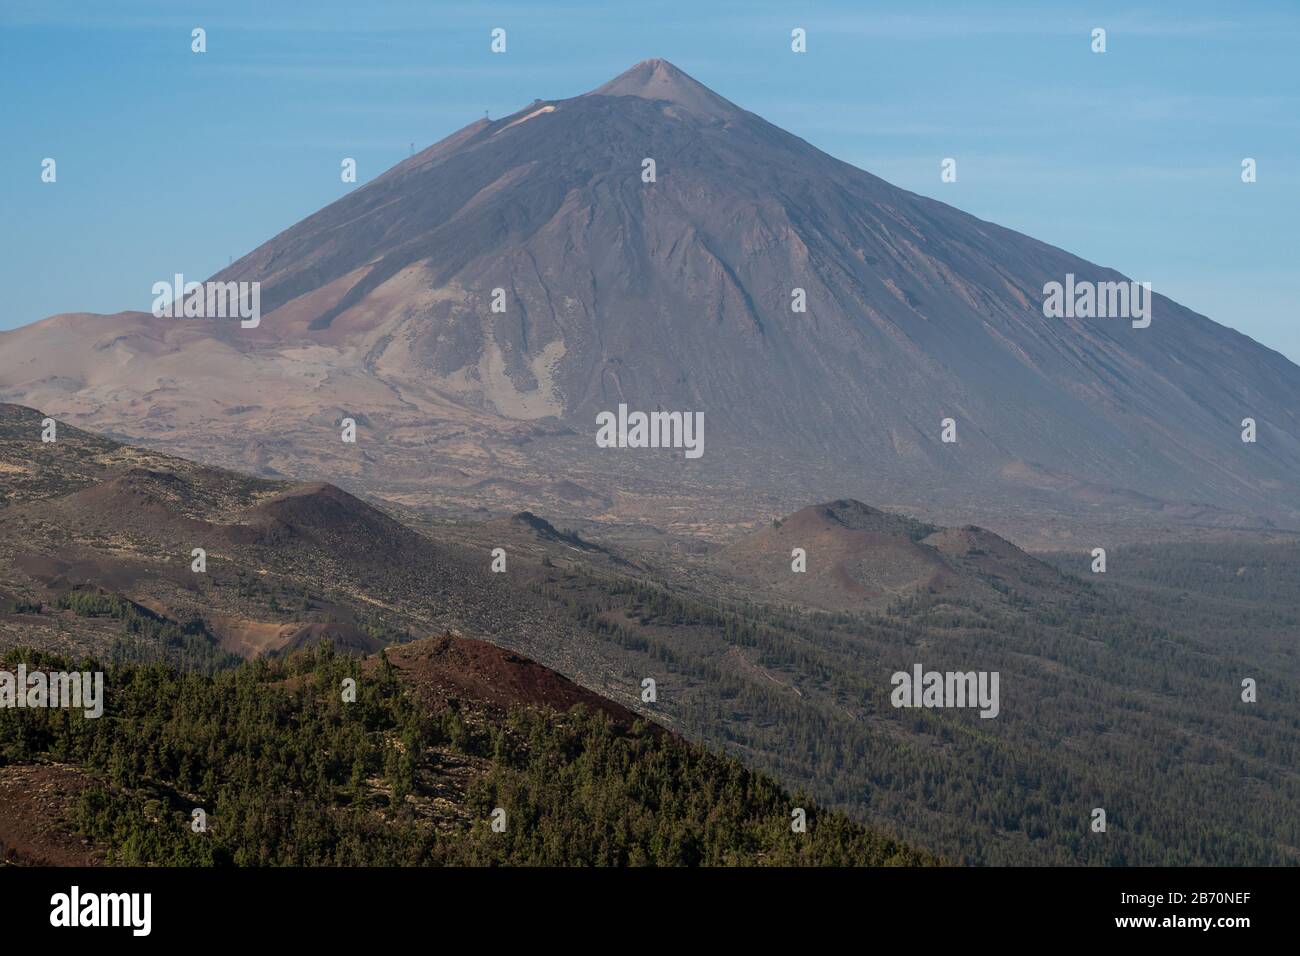 The mountain Pico del Teide Tenerife Stock Photo